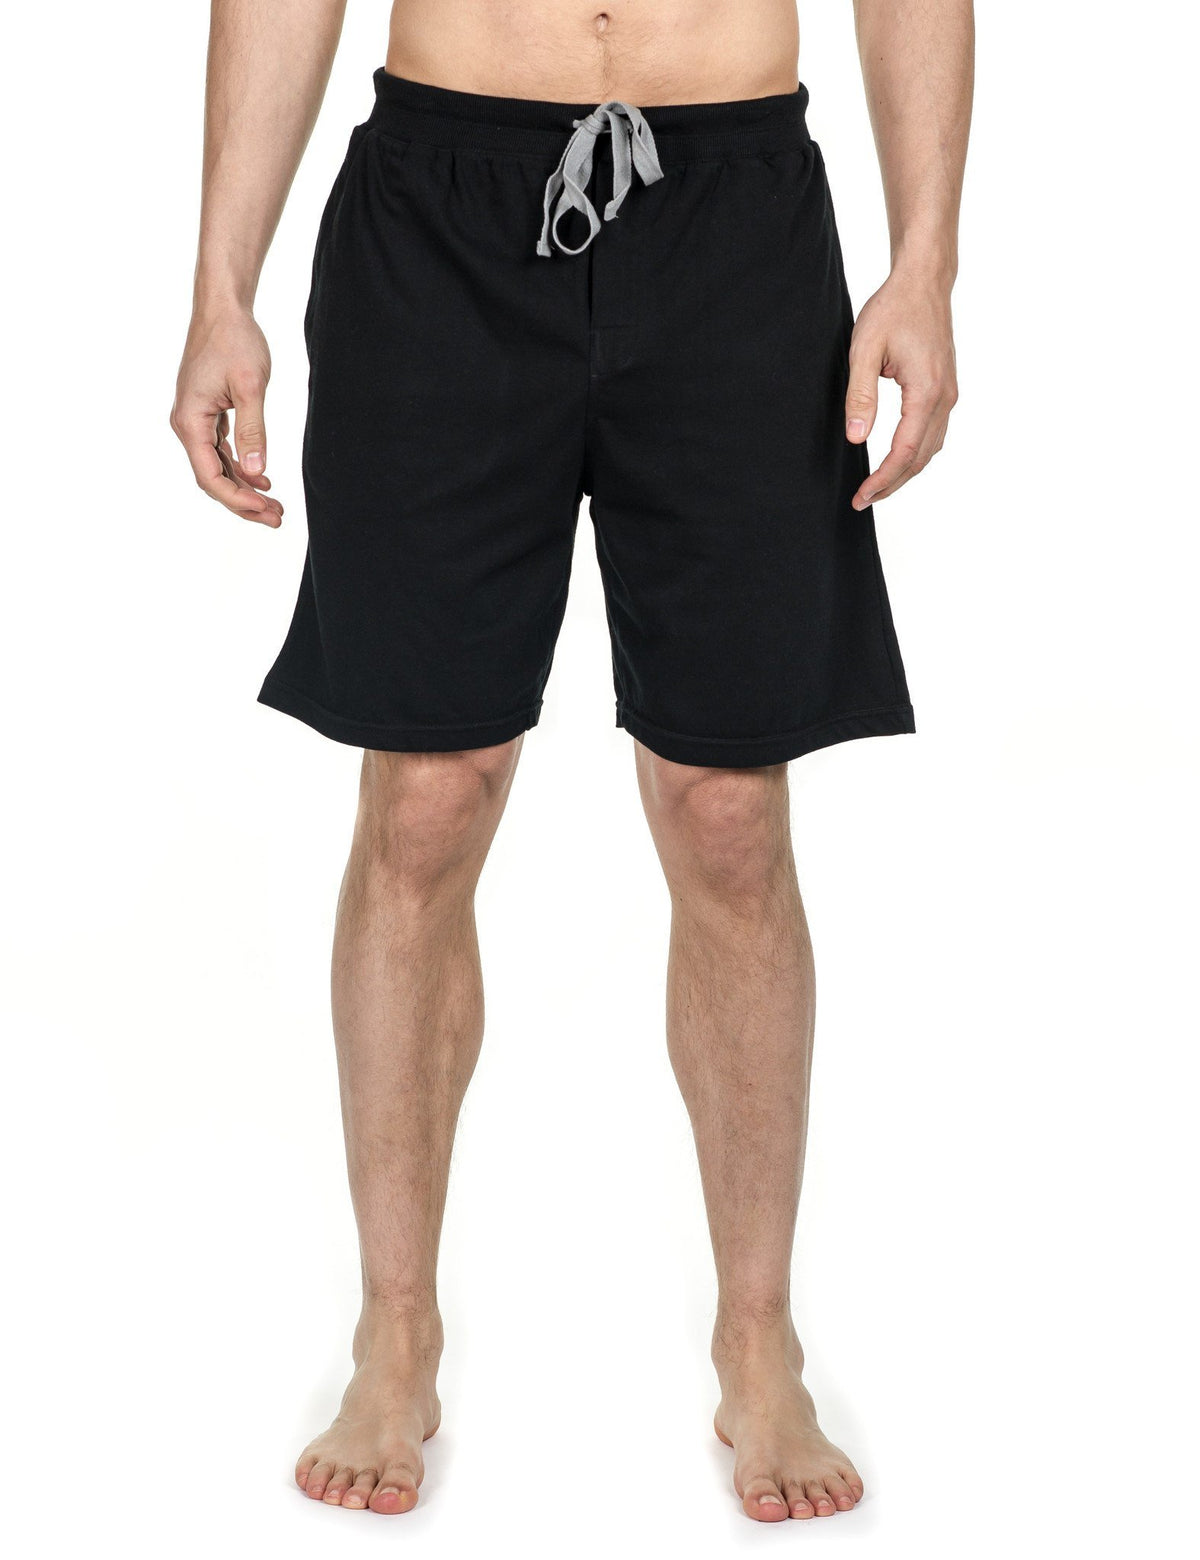 Men's Premium Knit Lounge/Sleep Shorts - Black